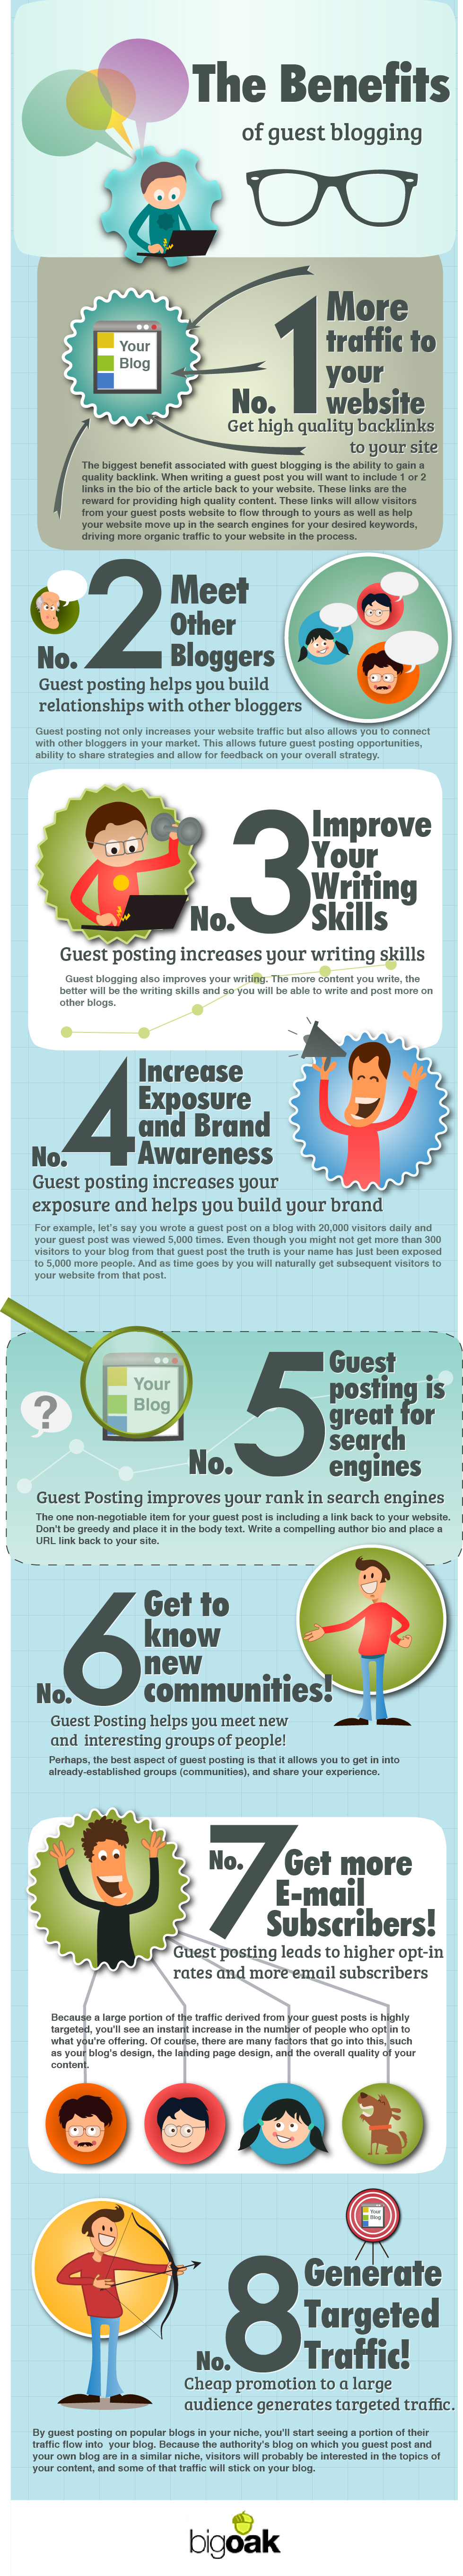 8 Huge Benefits of Guest Blogging for SEO